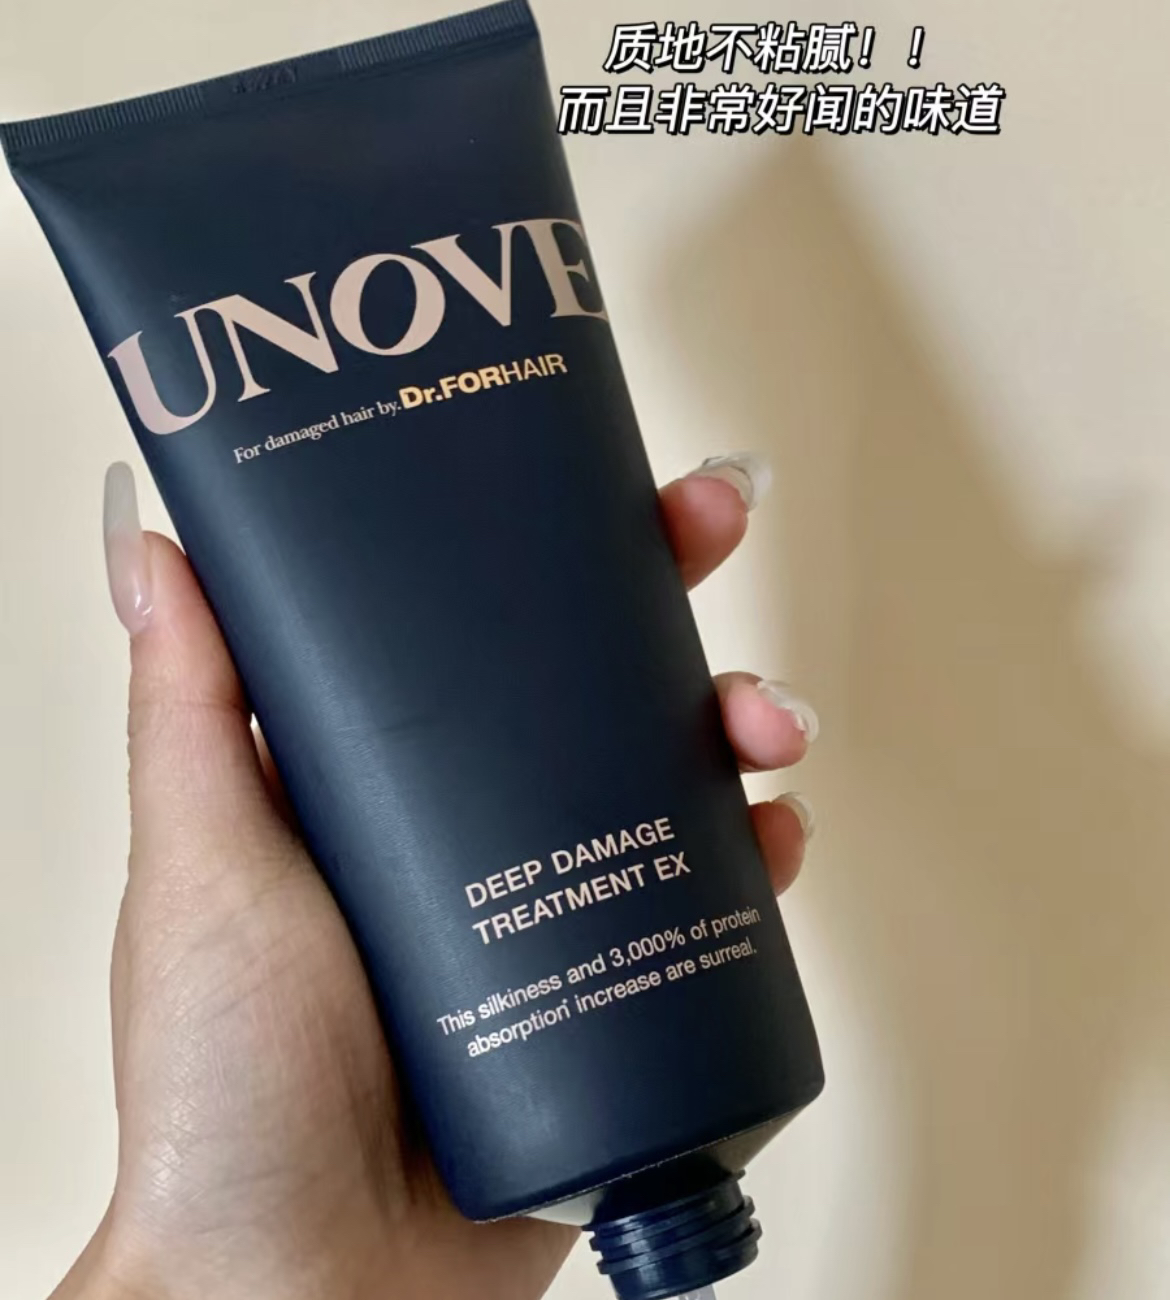 实力颜值并存!韩国UNOVE蛋白质深度修护发膜修复损伤护理营养精油